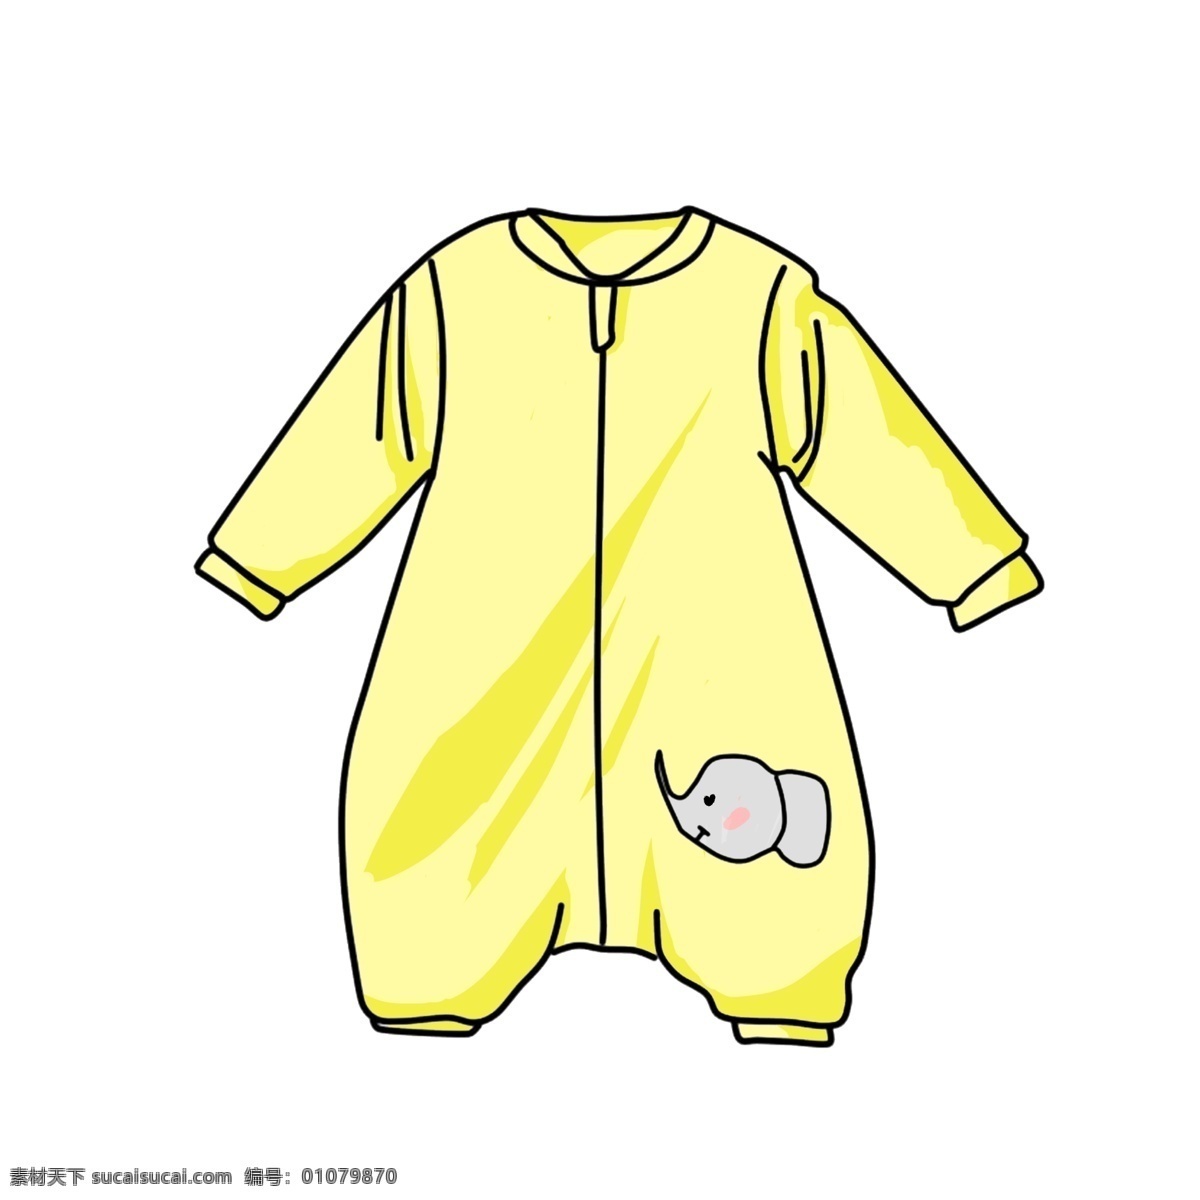 手绘 儿童 衣服 插画 黄色的衣服 可爱的衣服 萌萌哒小象 卡通 配 图 儿童衣服